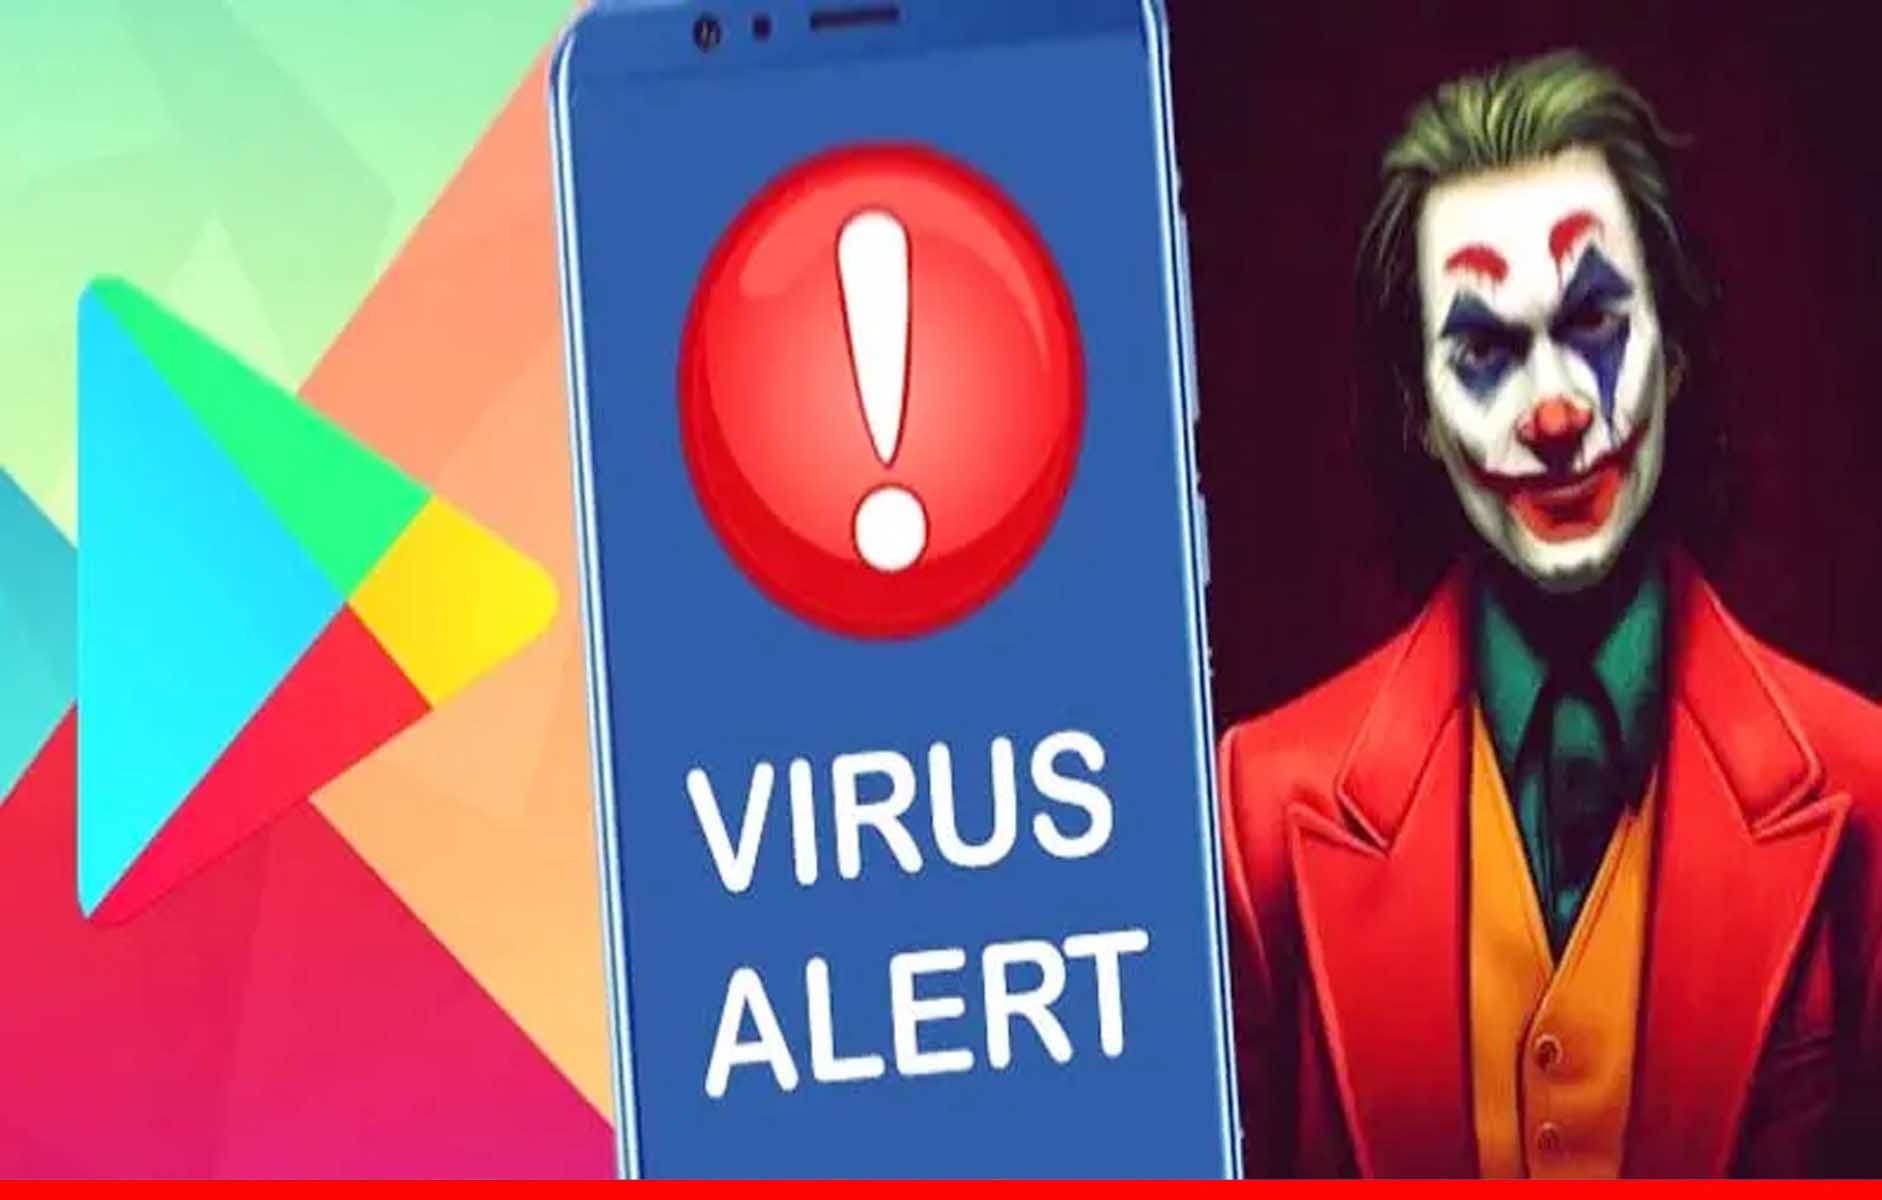 फोन में इंस्टॉल हैं ये ऐप तो झटपट कर दें डिलीट, वापस आ गया है Joker वायरस